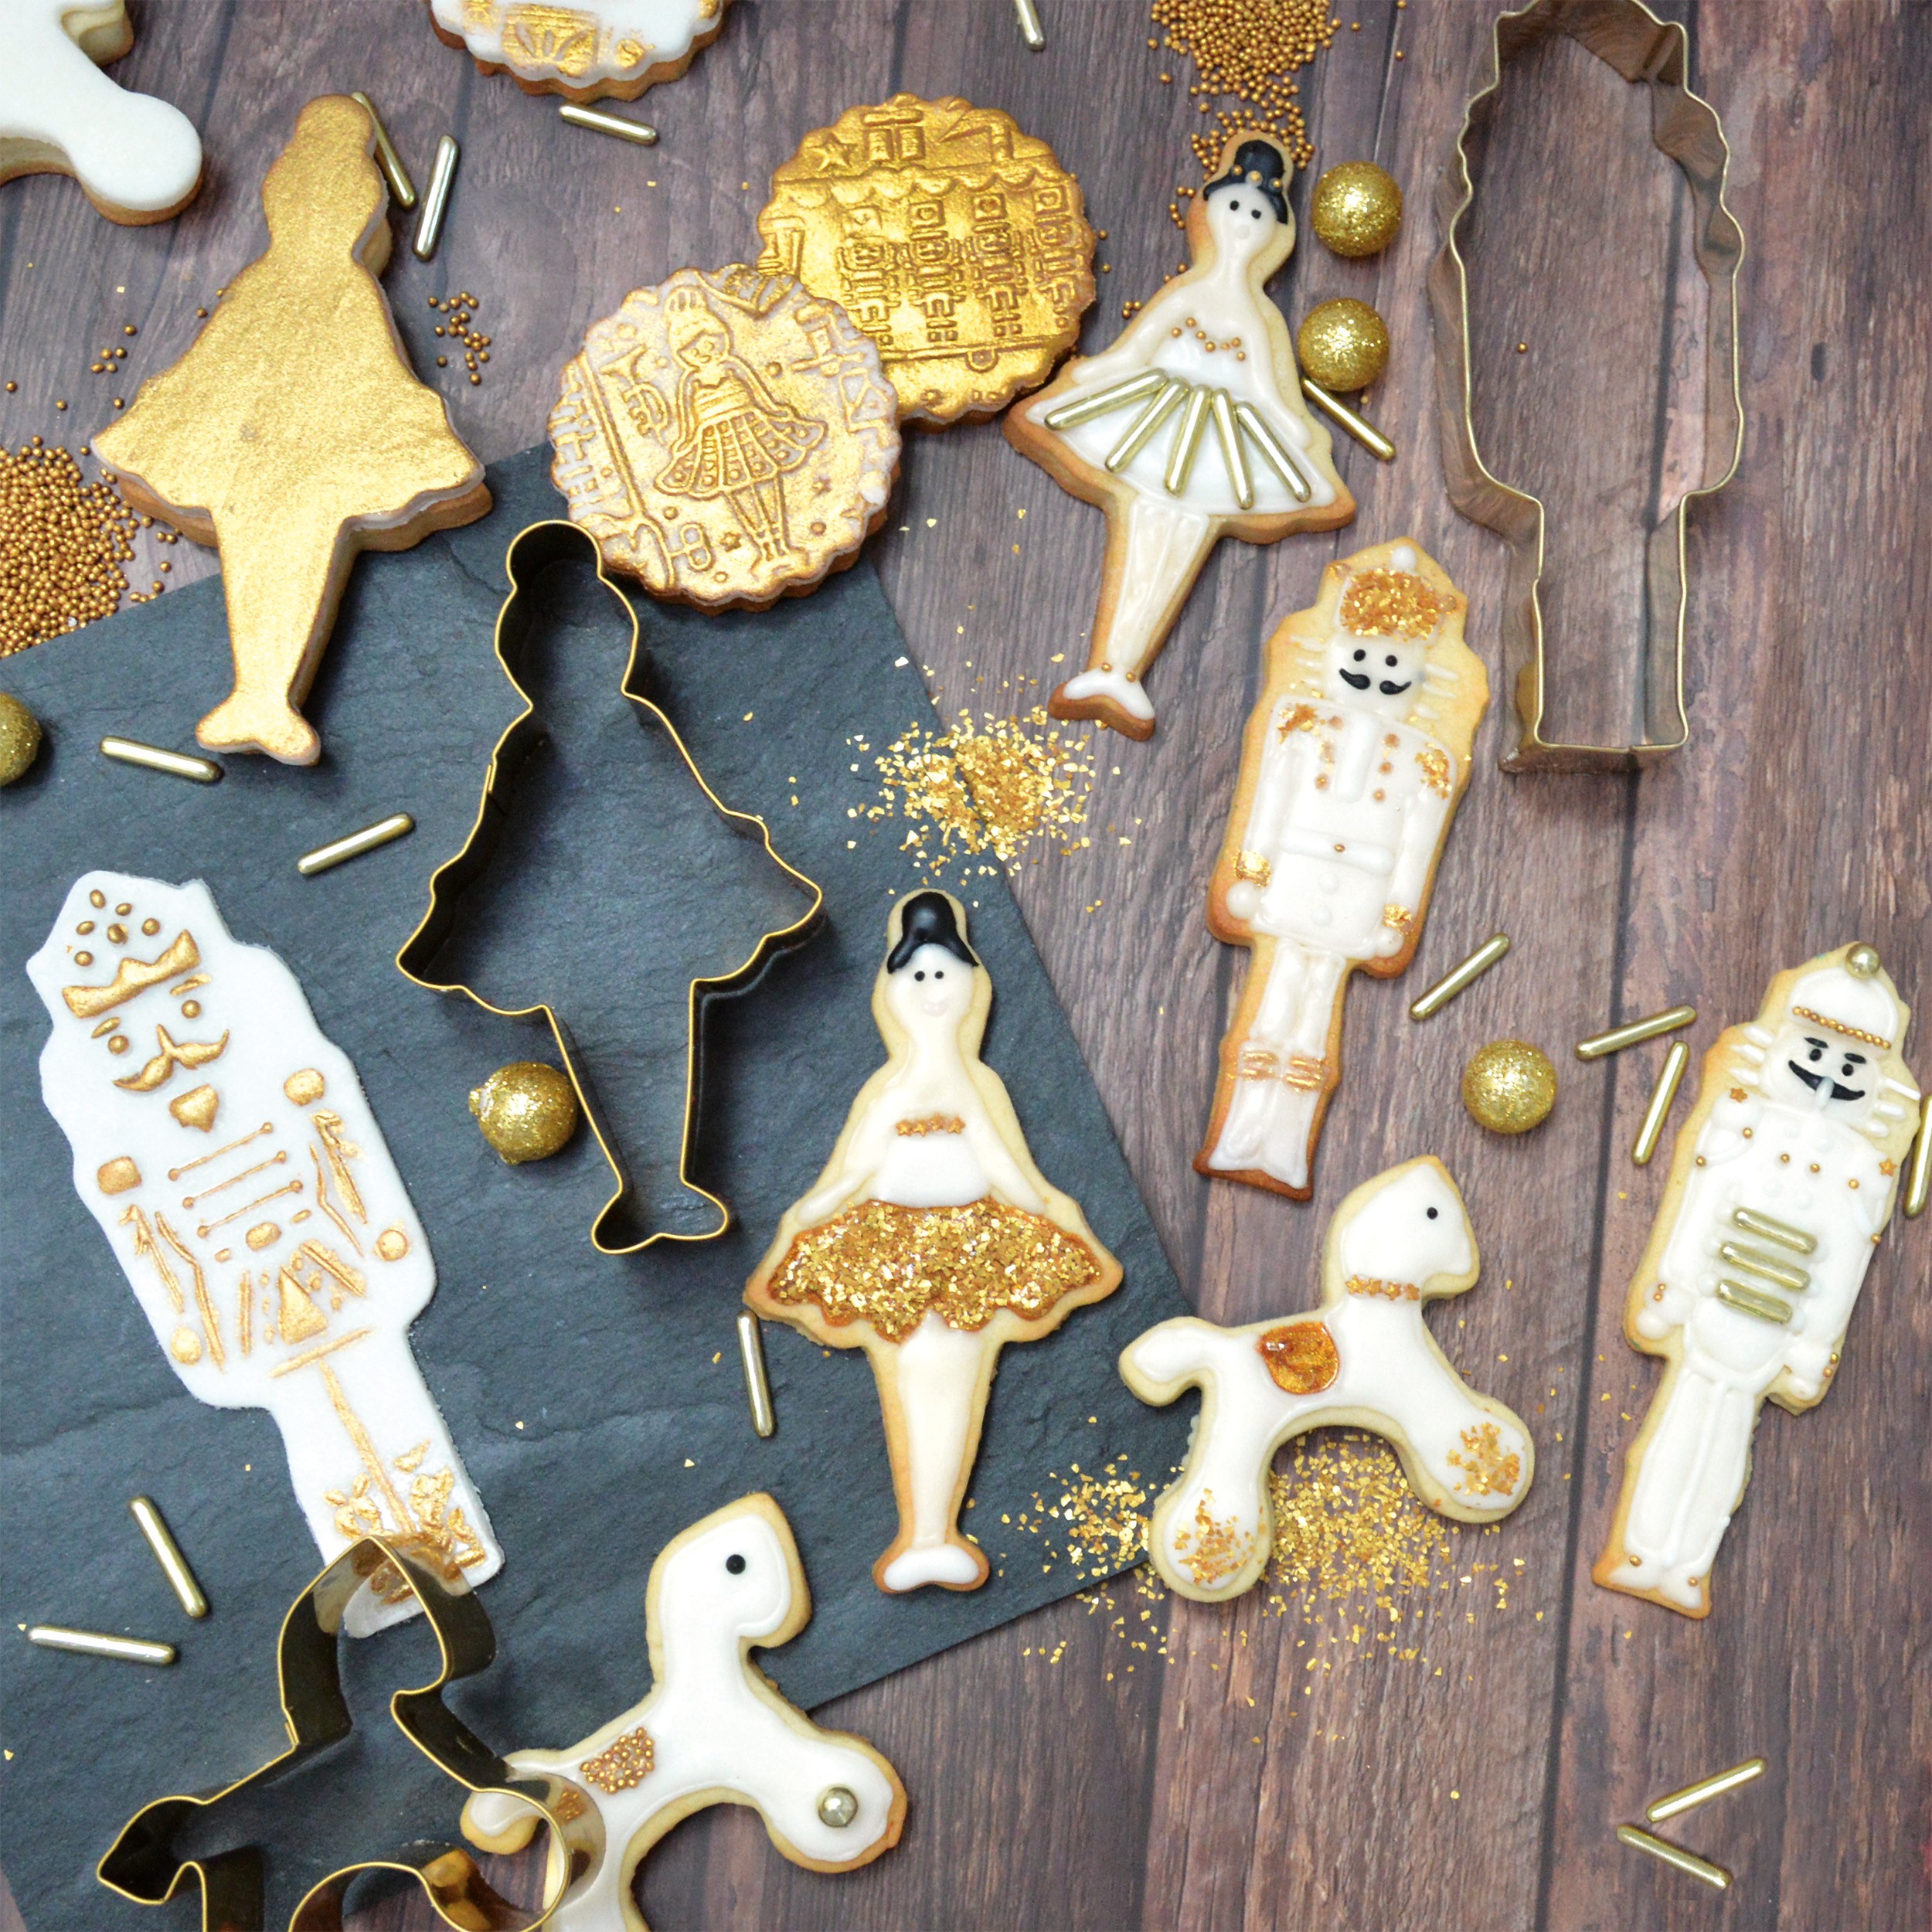 Meilleur glaçage royal pour décoration de biscuits – Amourducake